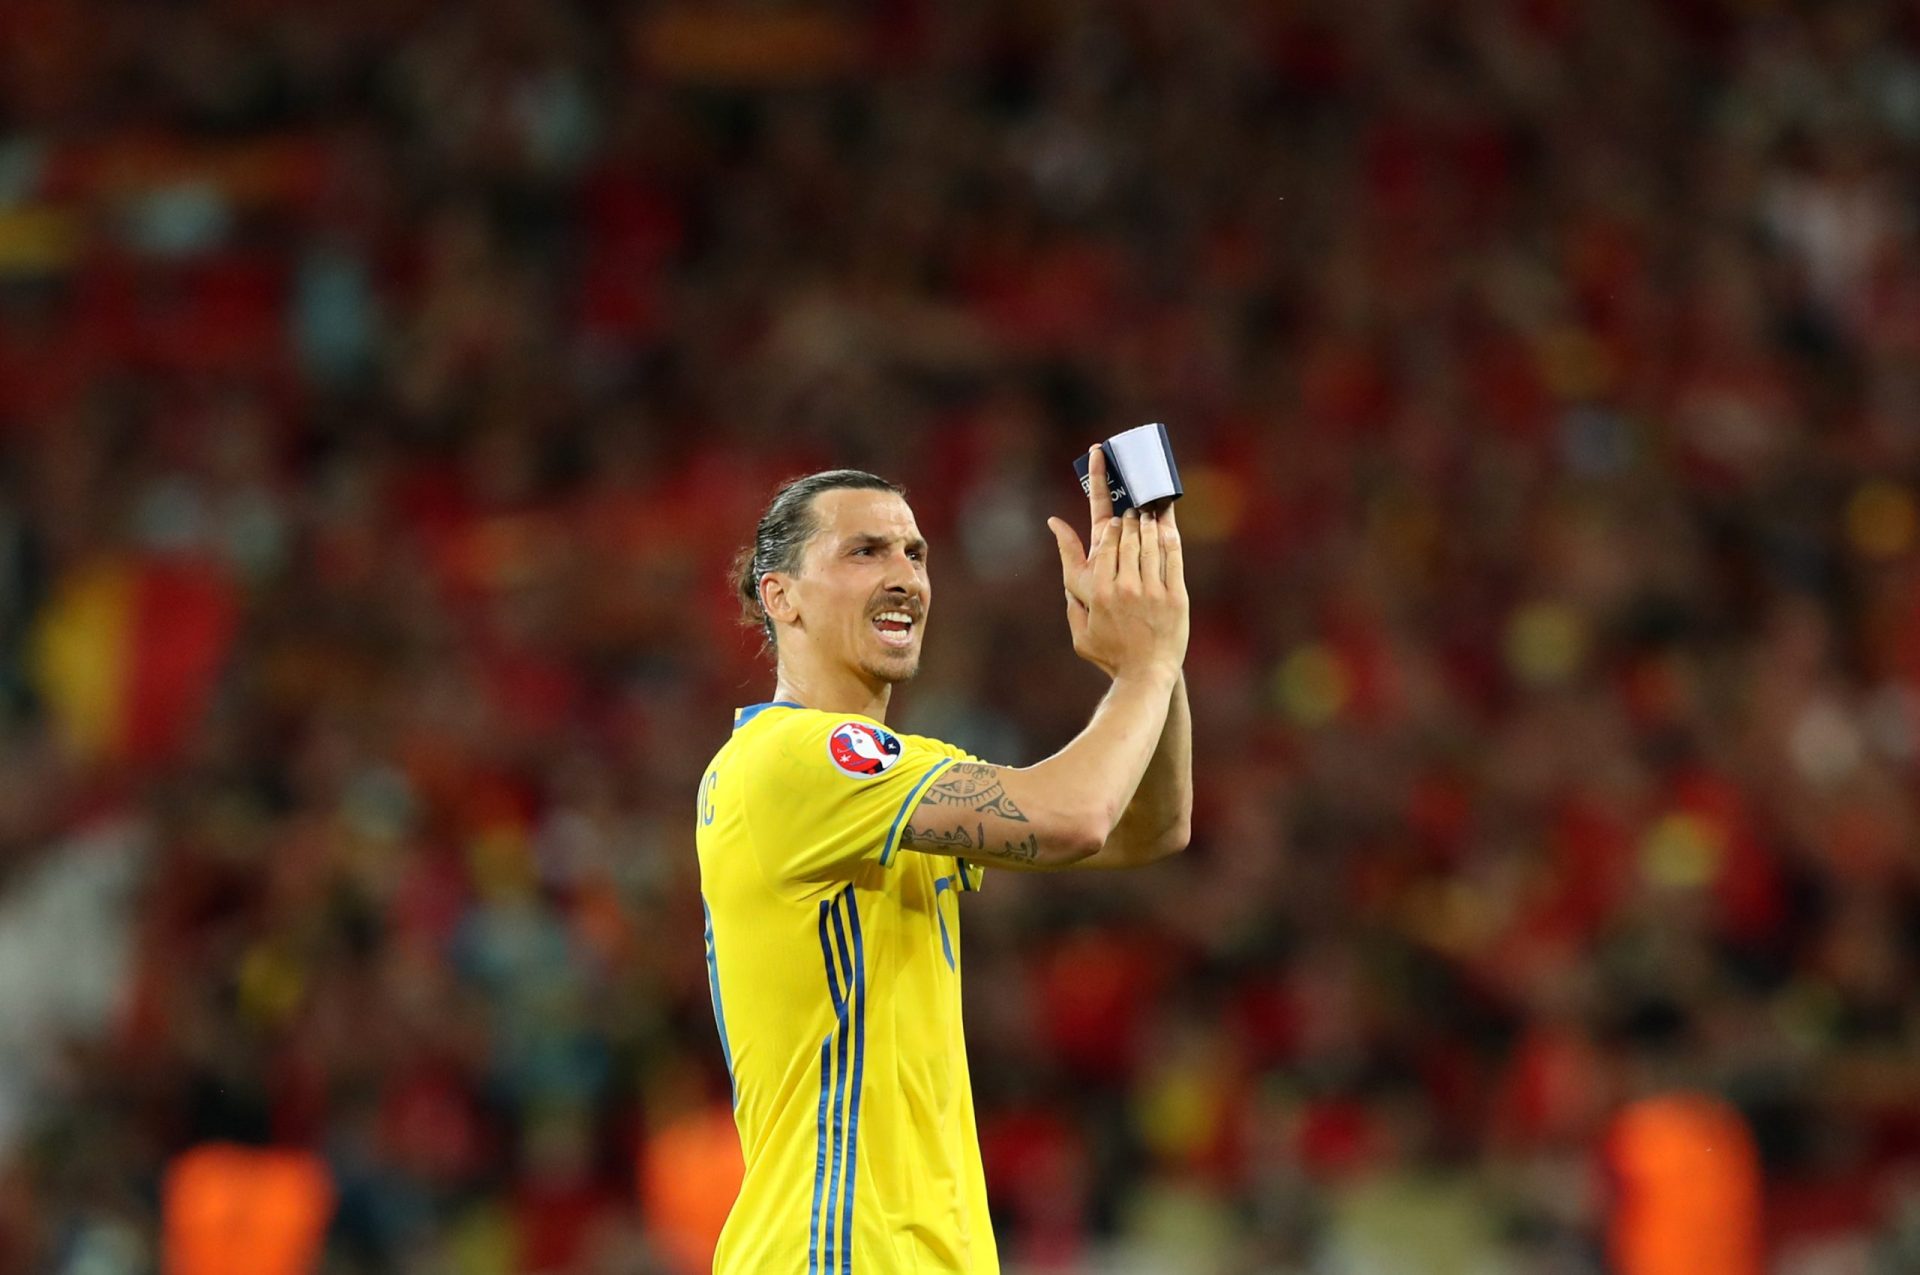 Ibrahimovic despede-se da seleção sueca: “Amo-vos”